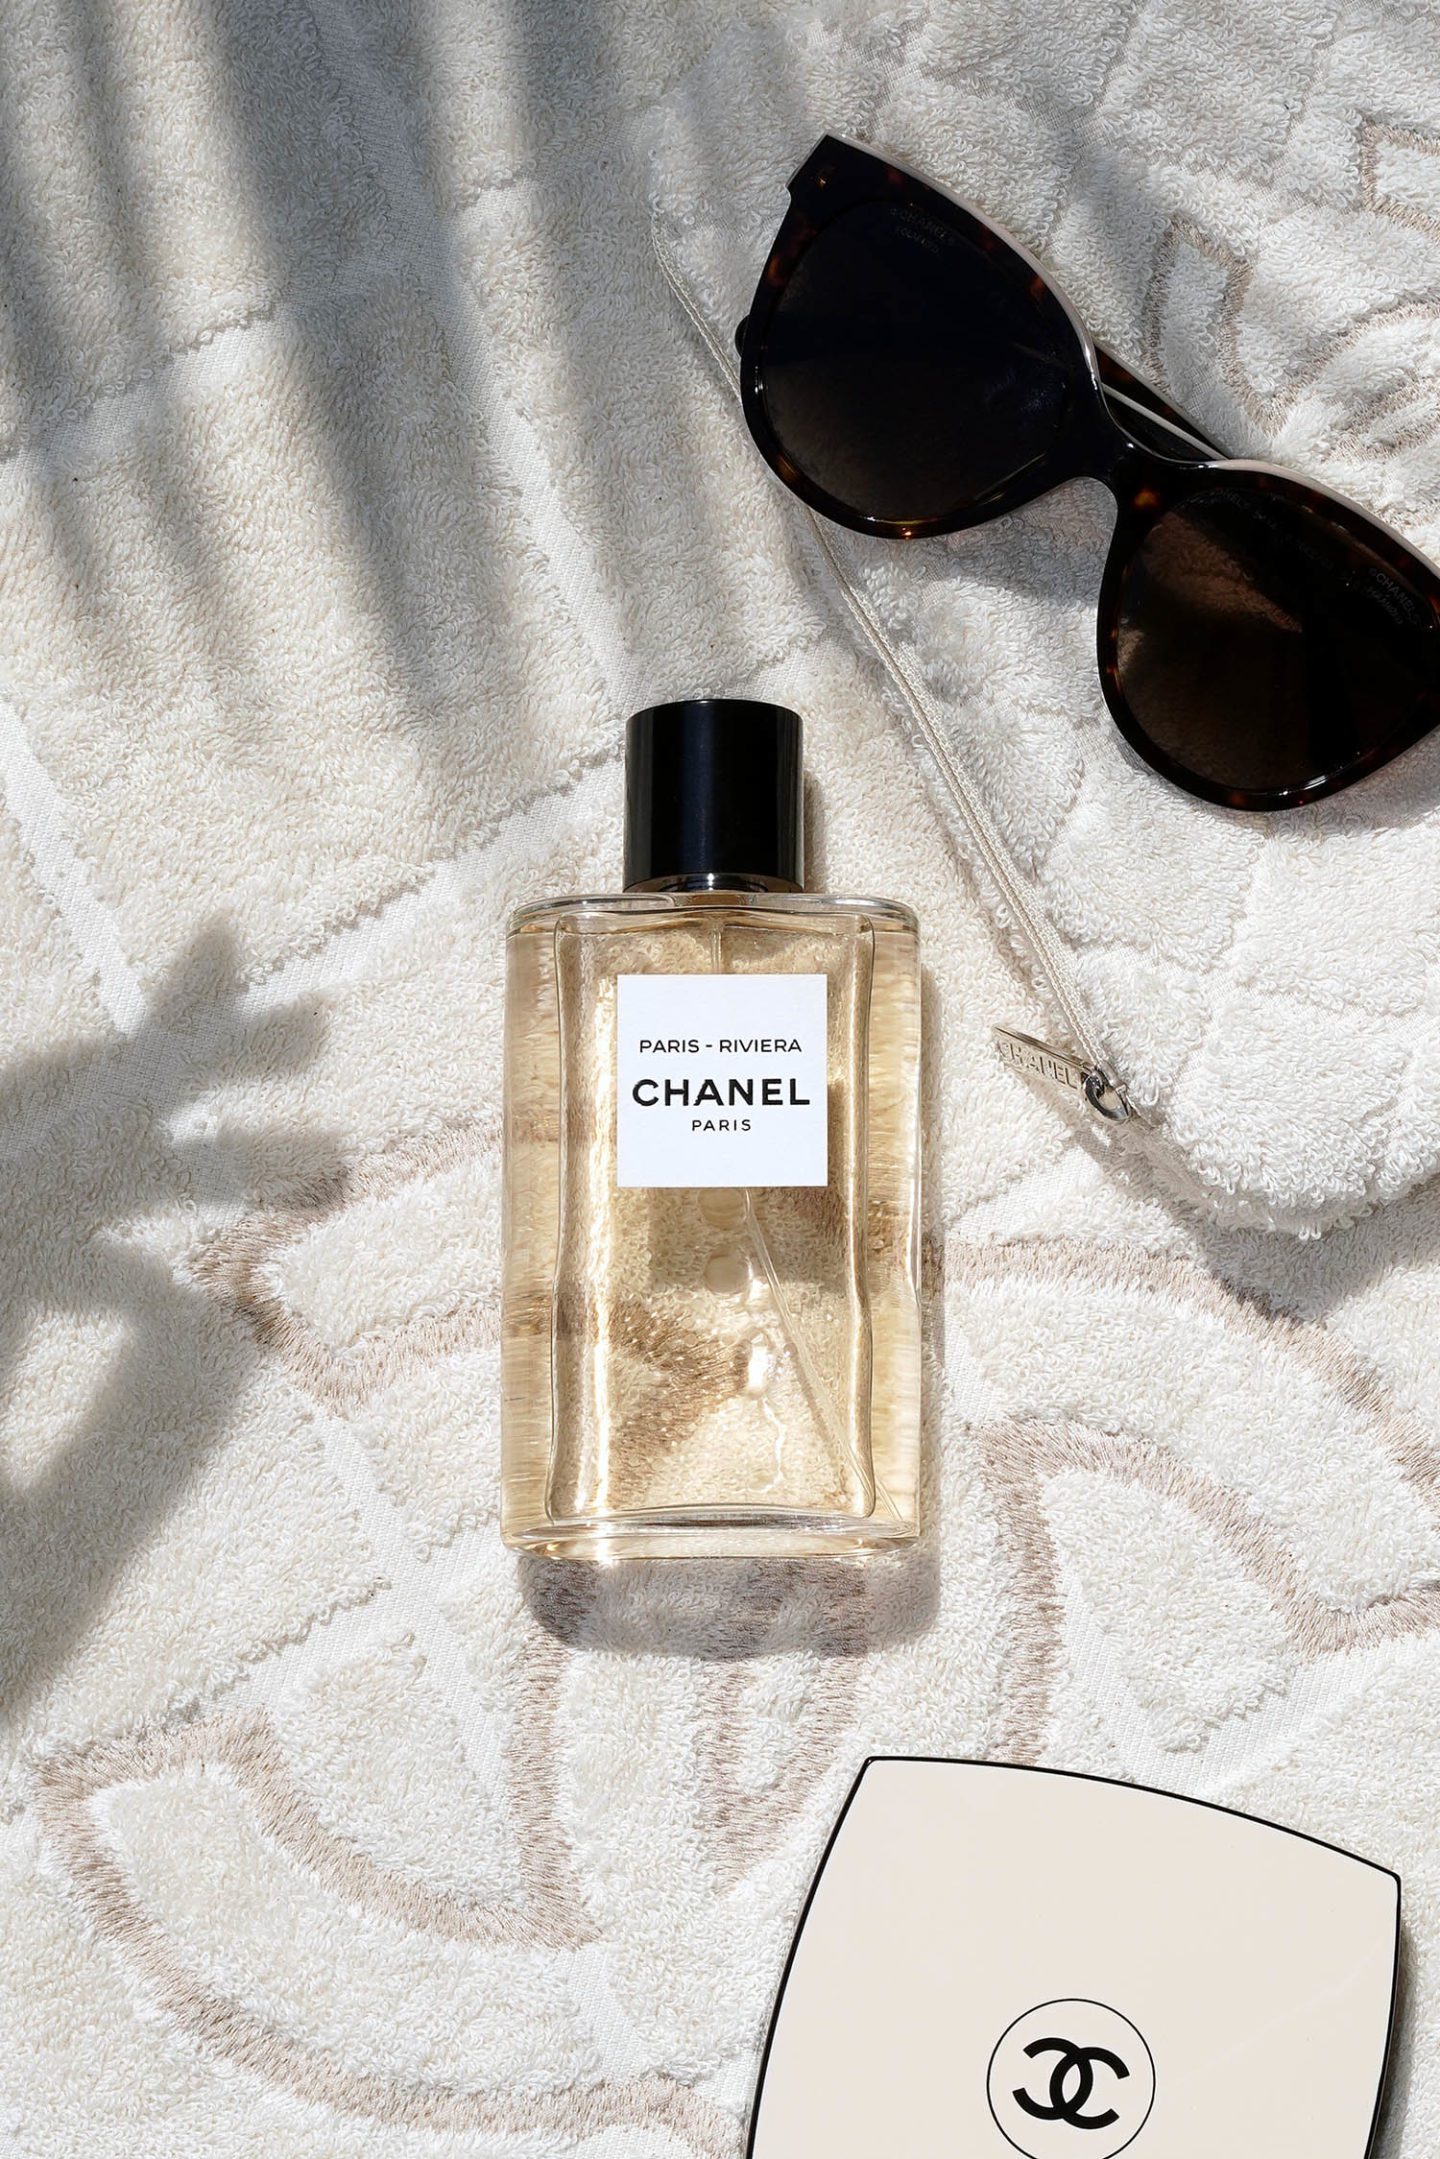 Chanel Les Eaux de Chanel Paris-Riviera Eau de Toilette